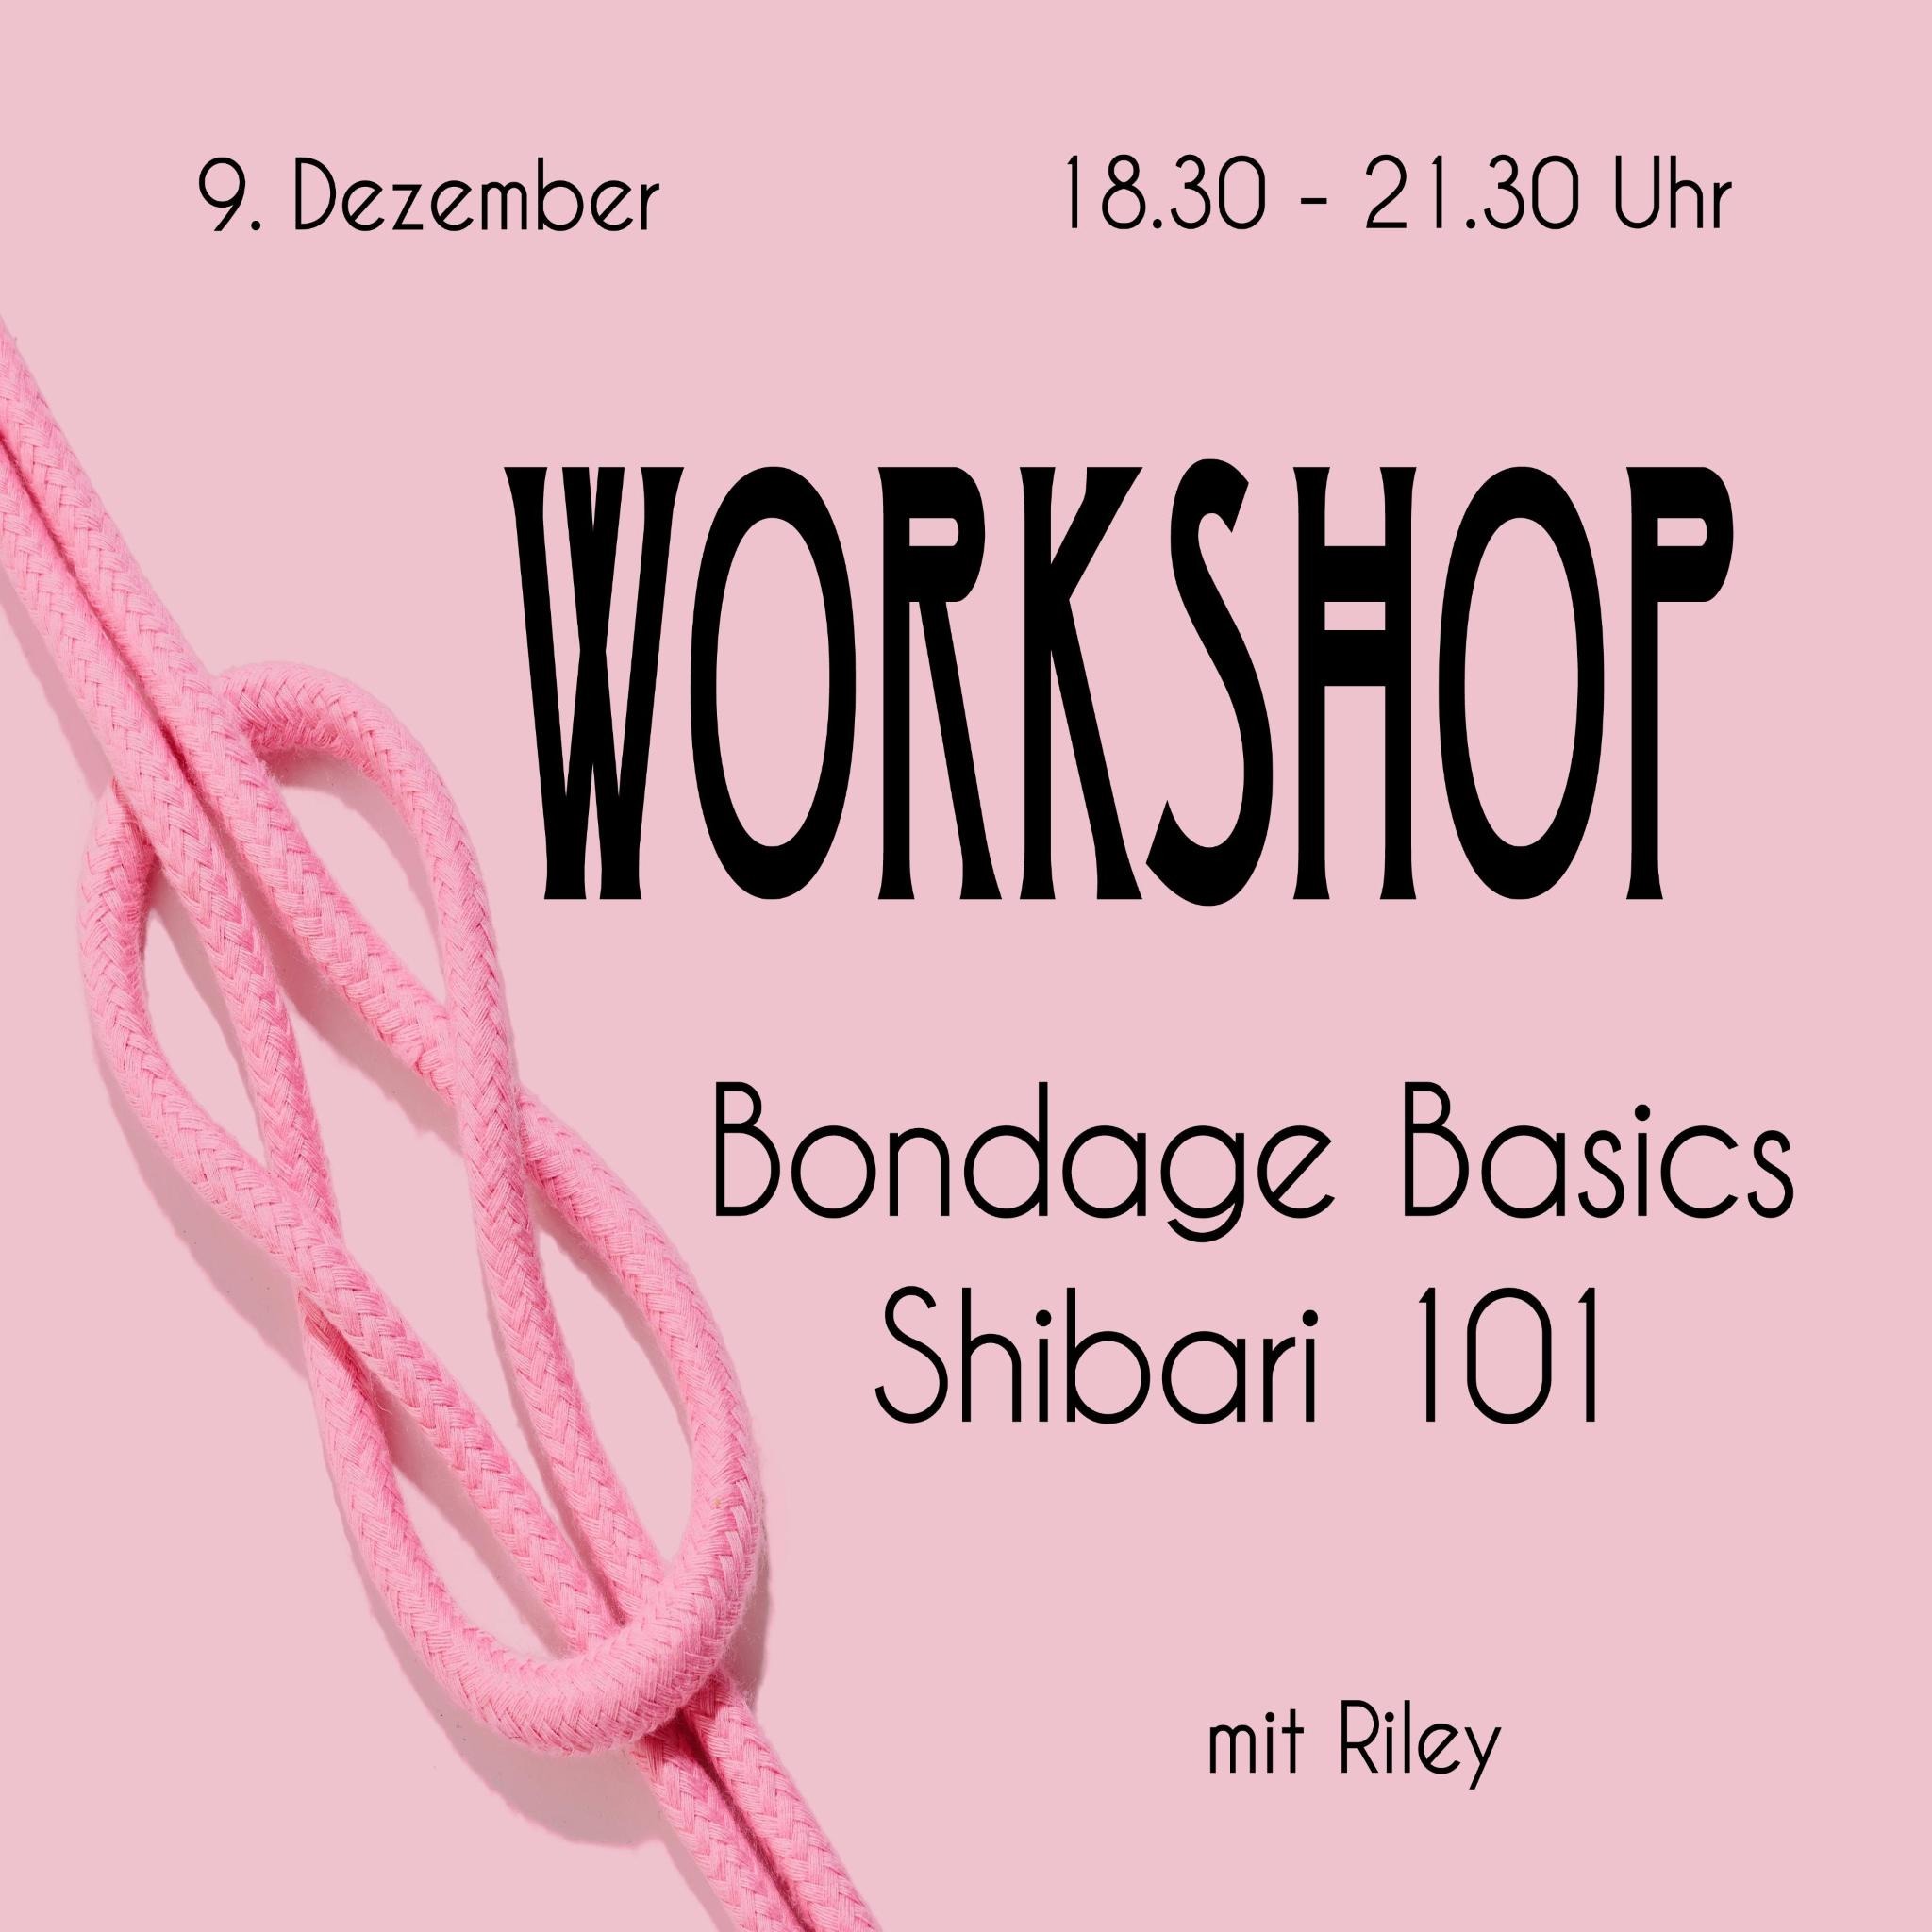 Workshop „Bondage Basics: Shibari 101“ mit Riley